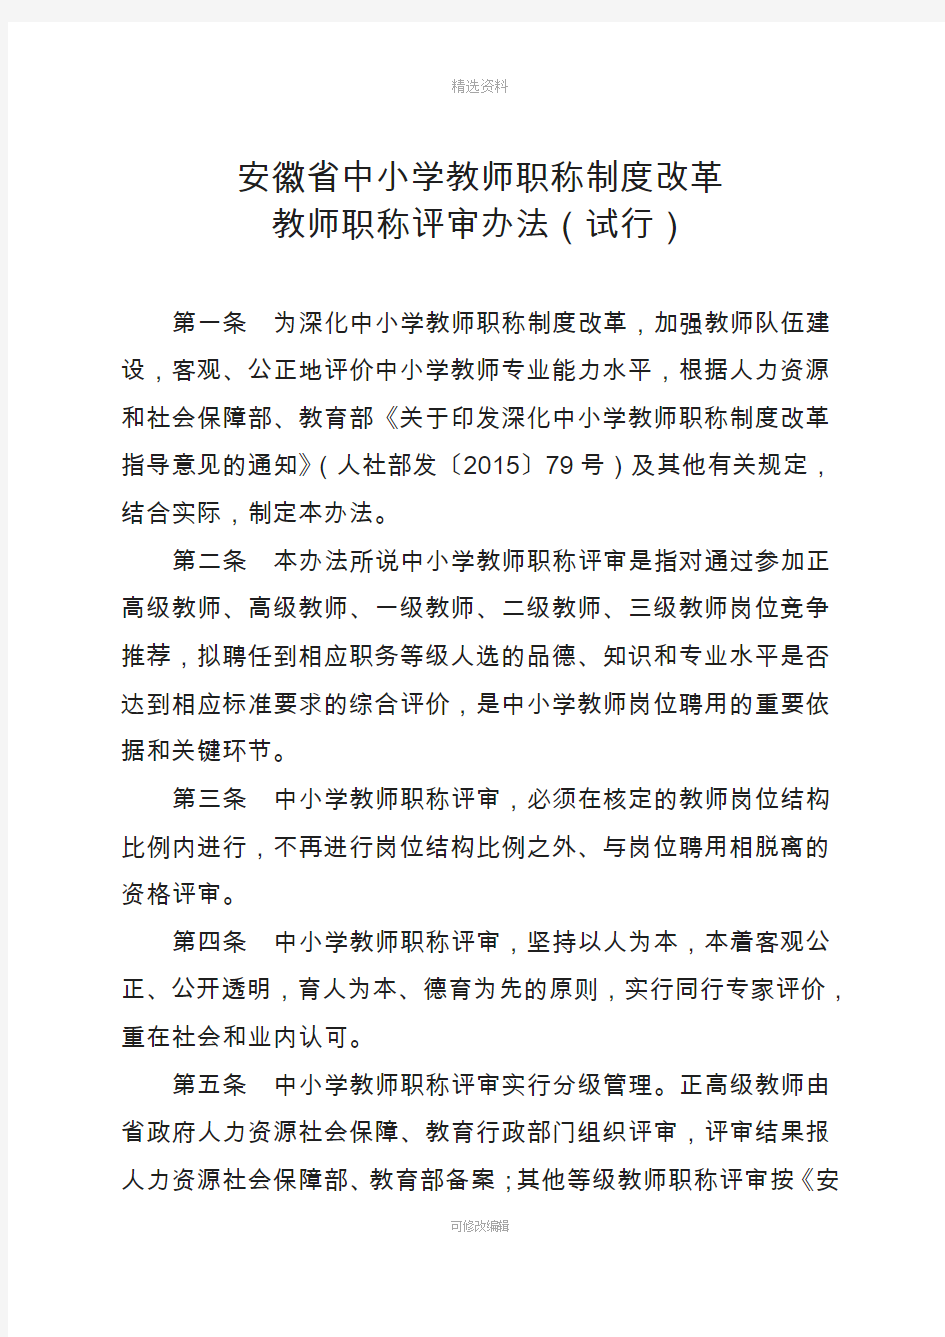 安徽省中小学教师职称制度改革教师职称评审办法(试行)